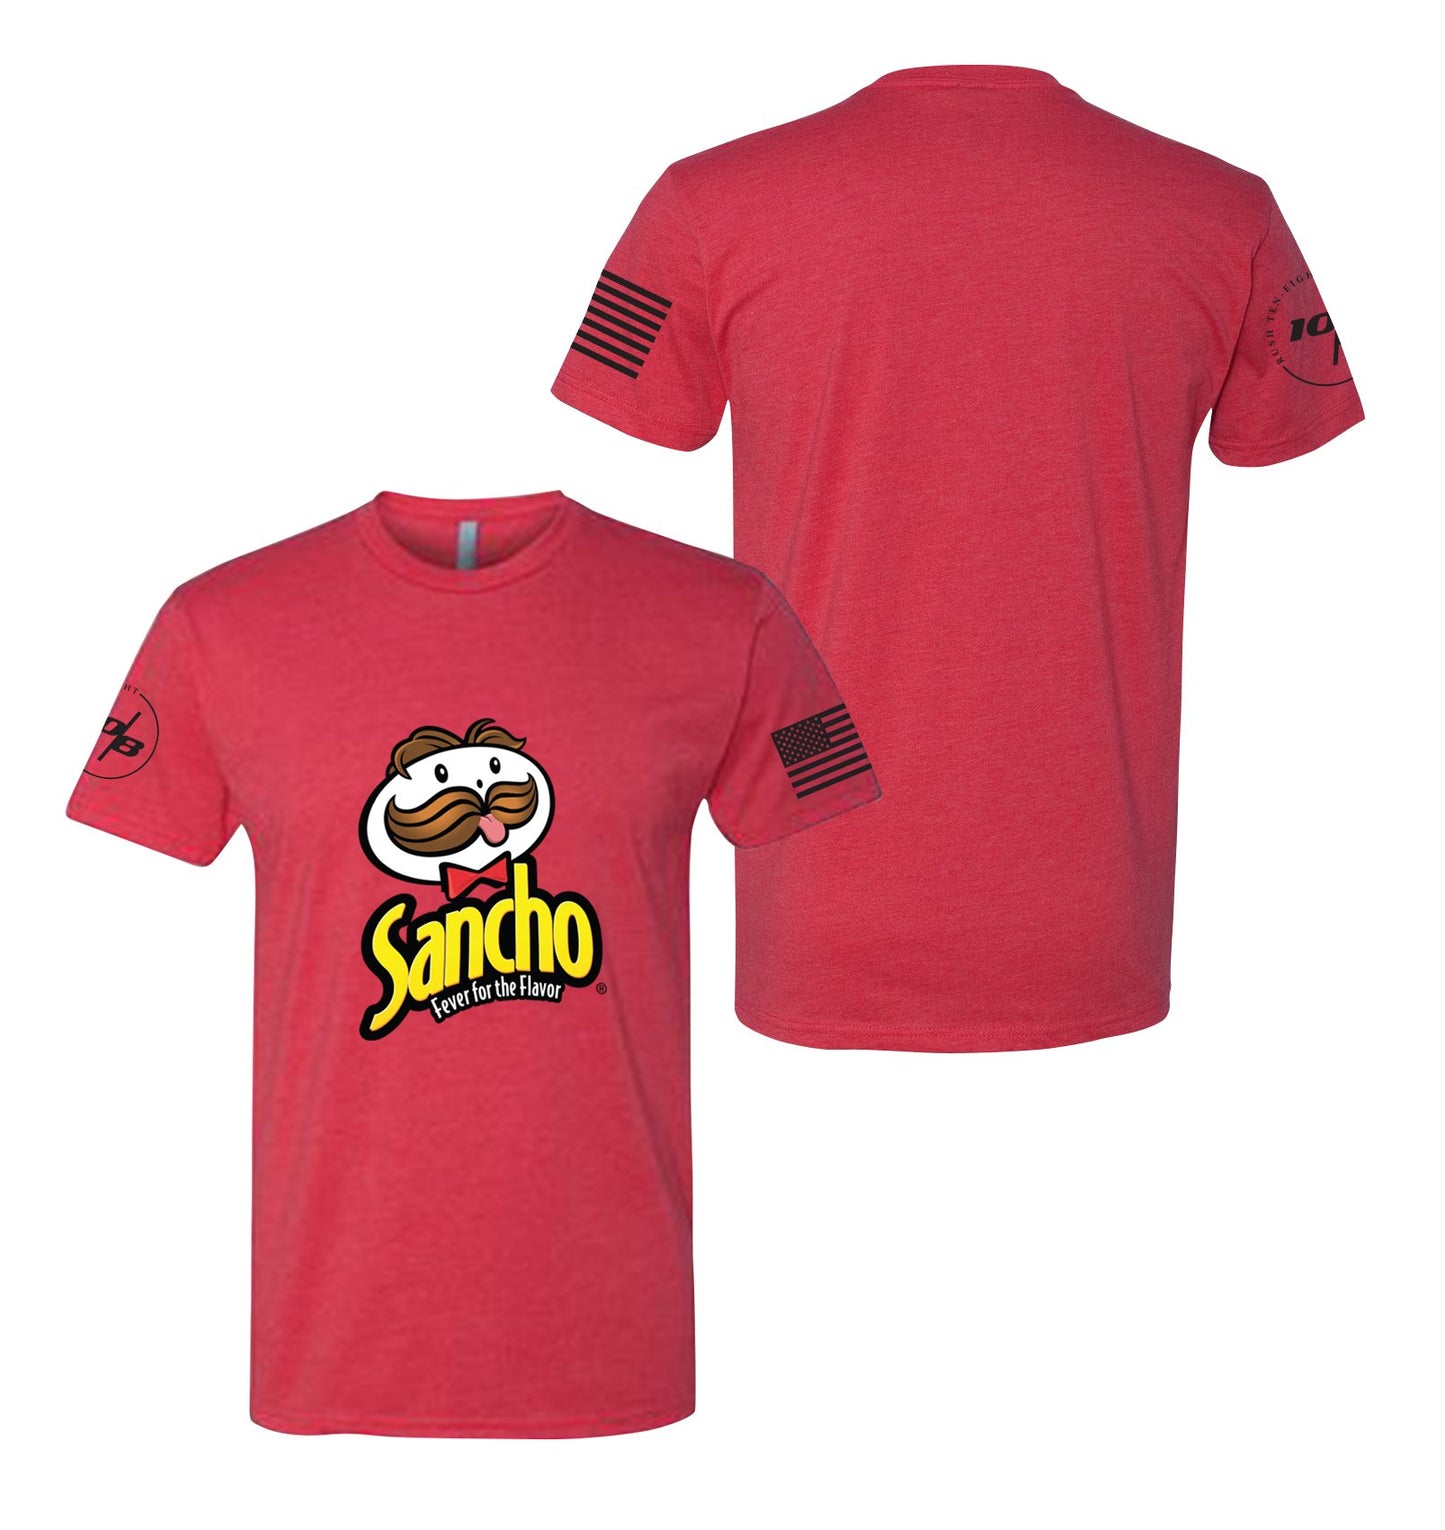 Sancho Men's Ultimate T-Shirt